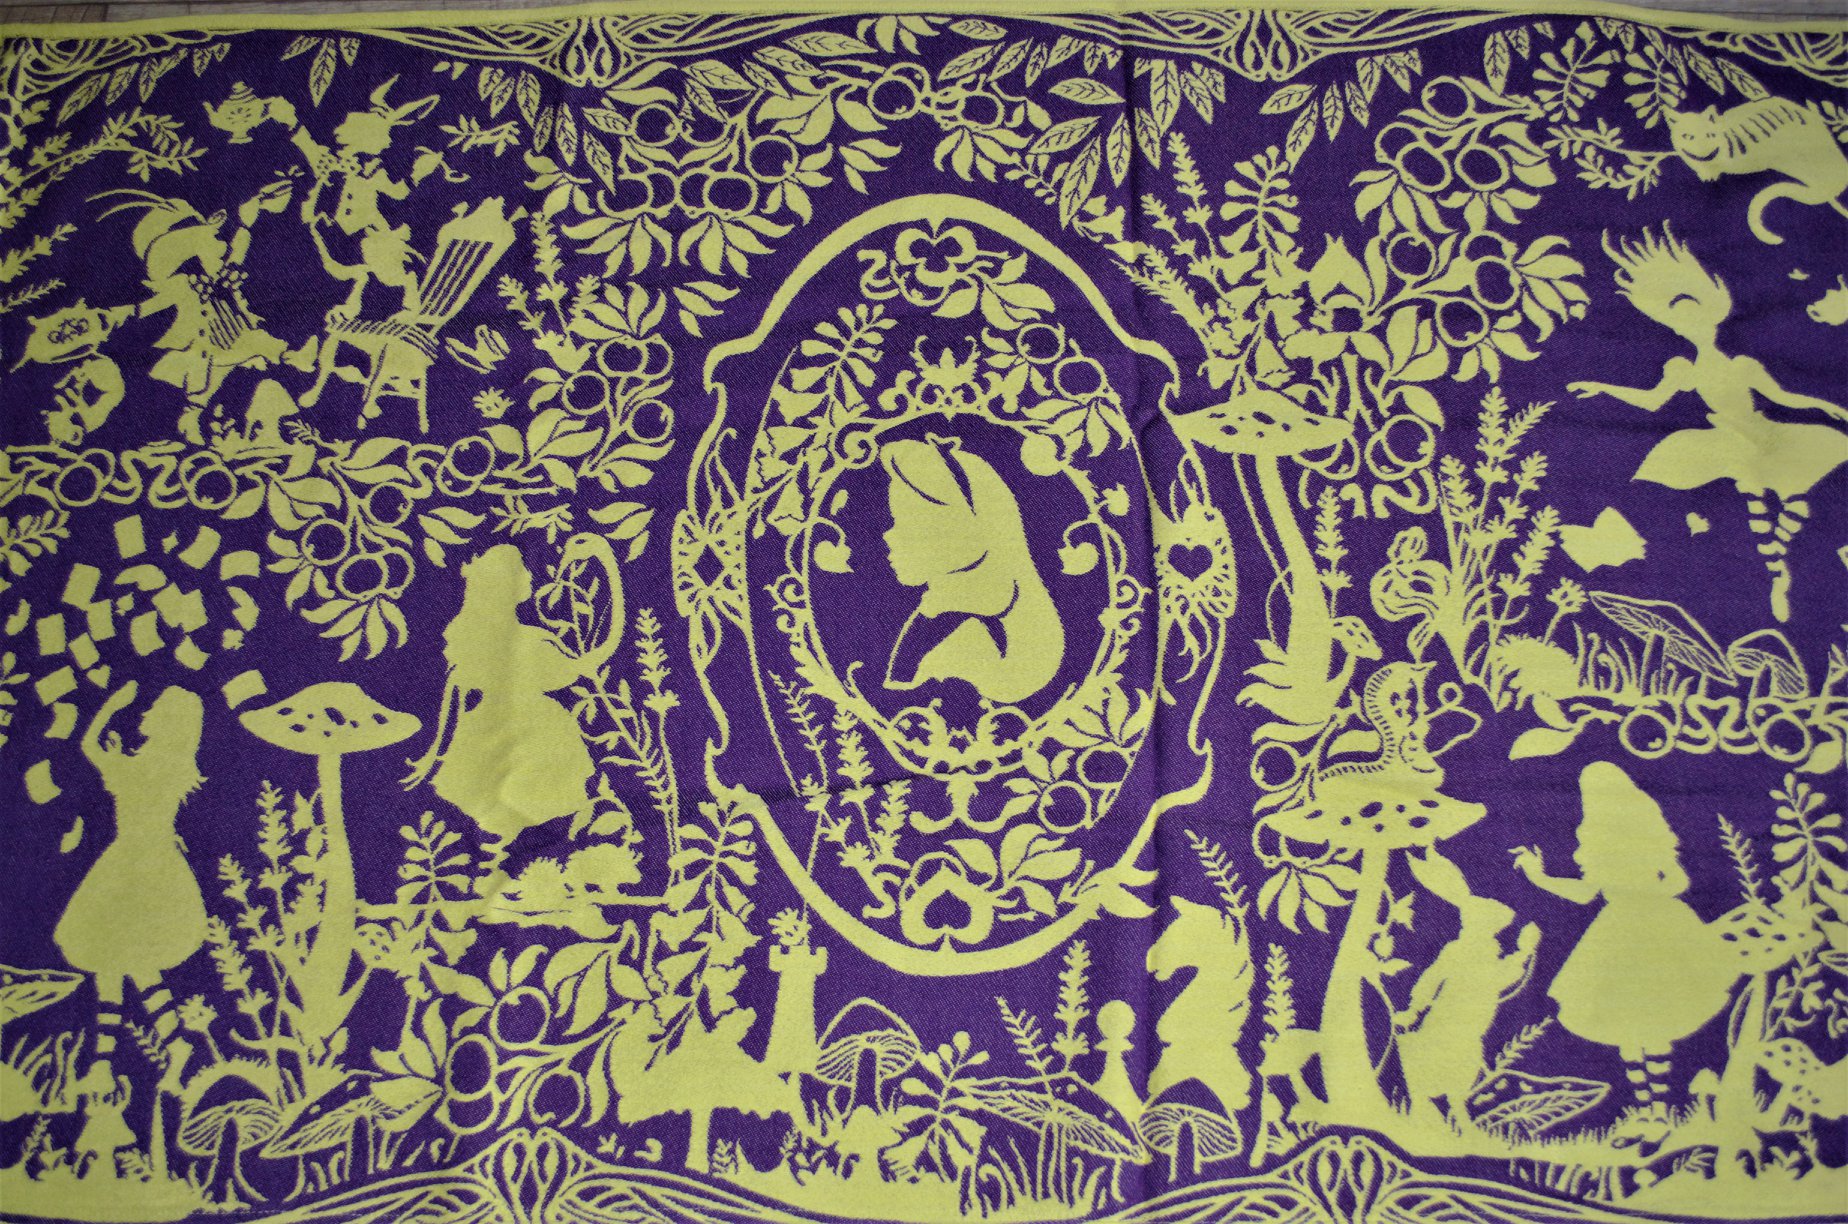 Mokosh-wrap Alice in Wonderland Cheshire Cat Wrap (merino) Image